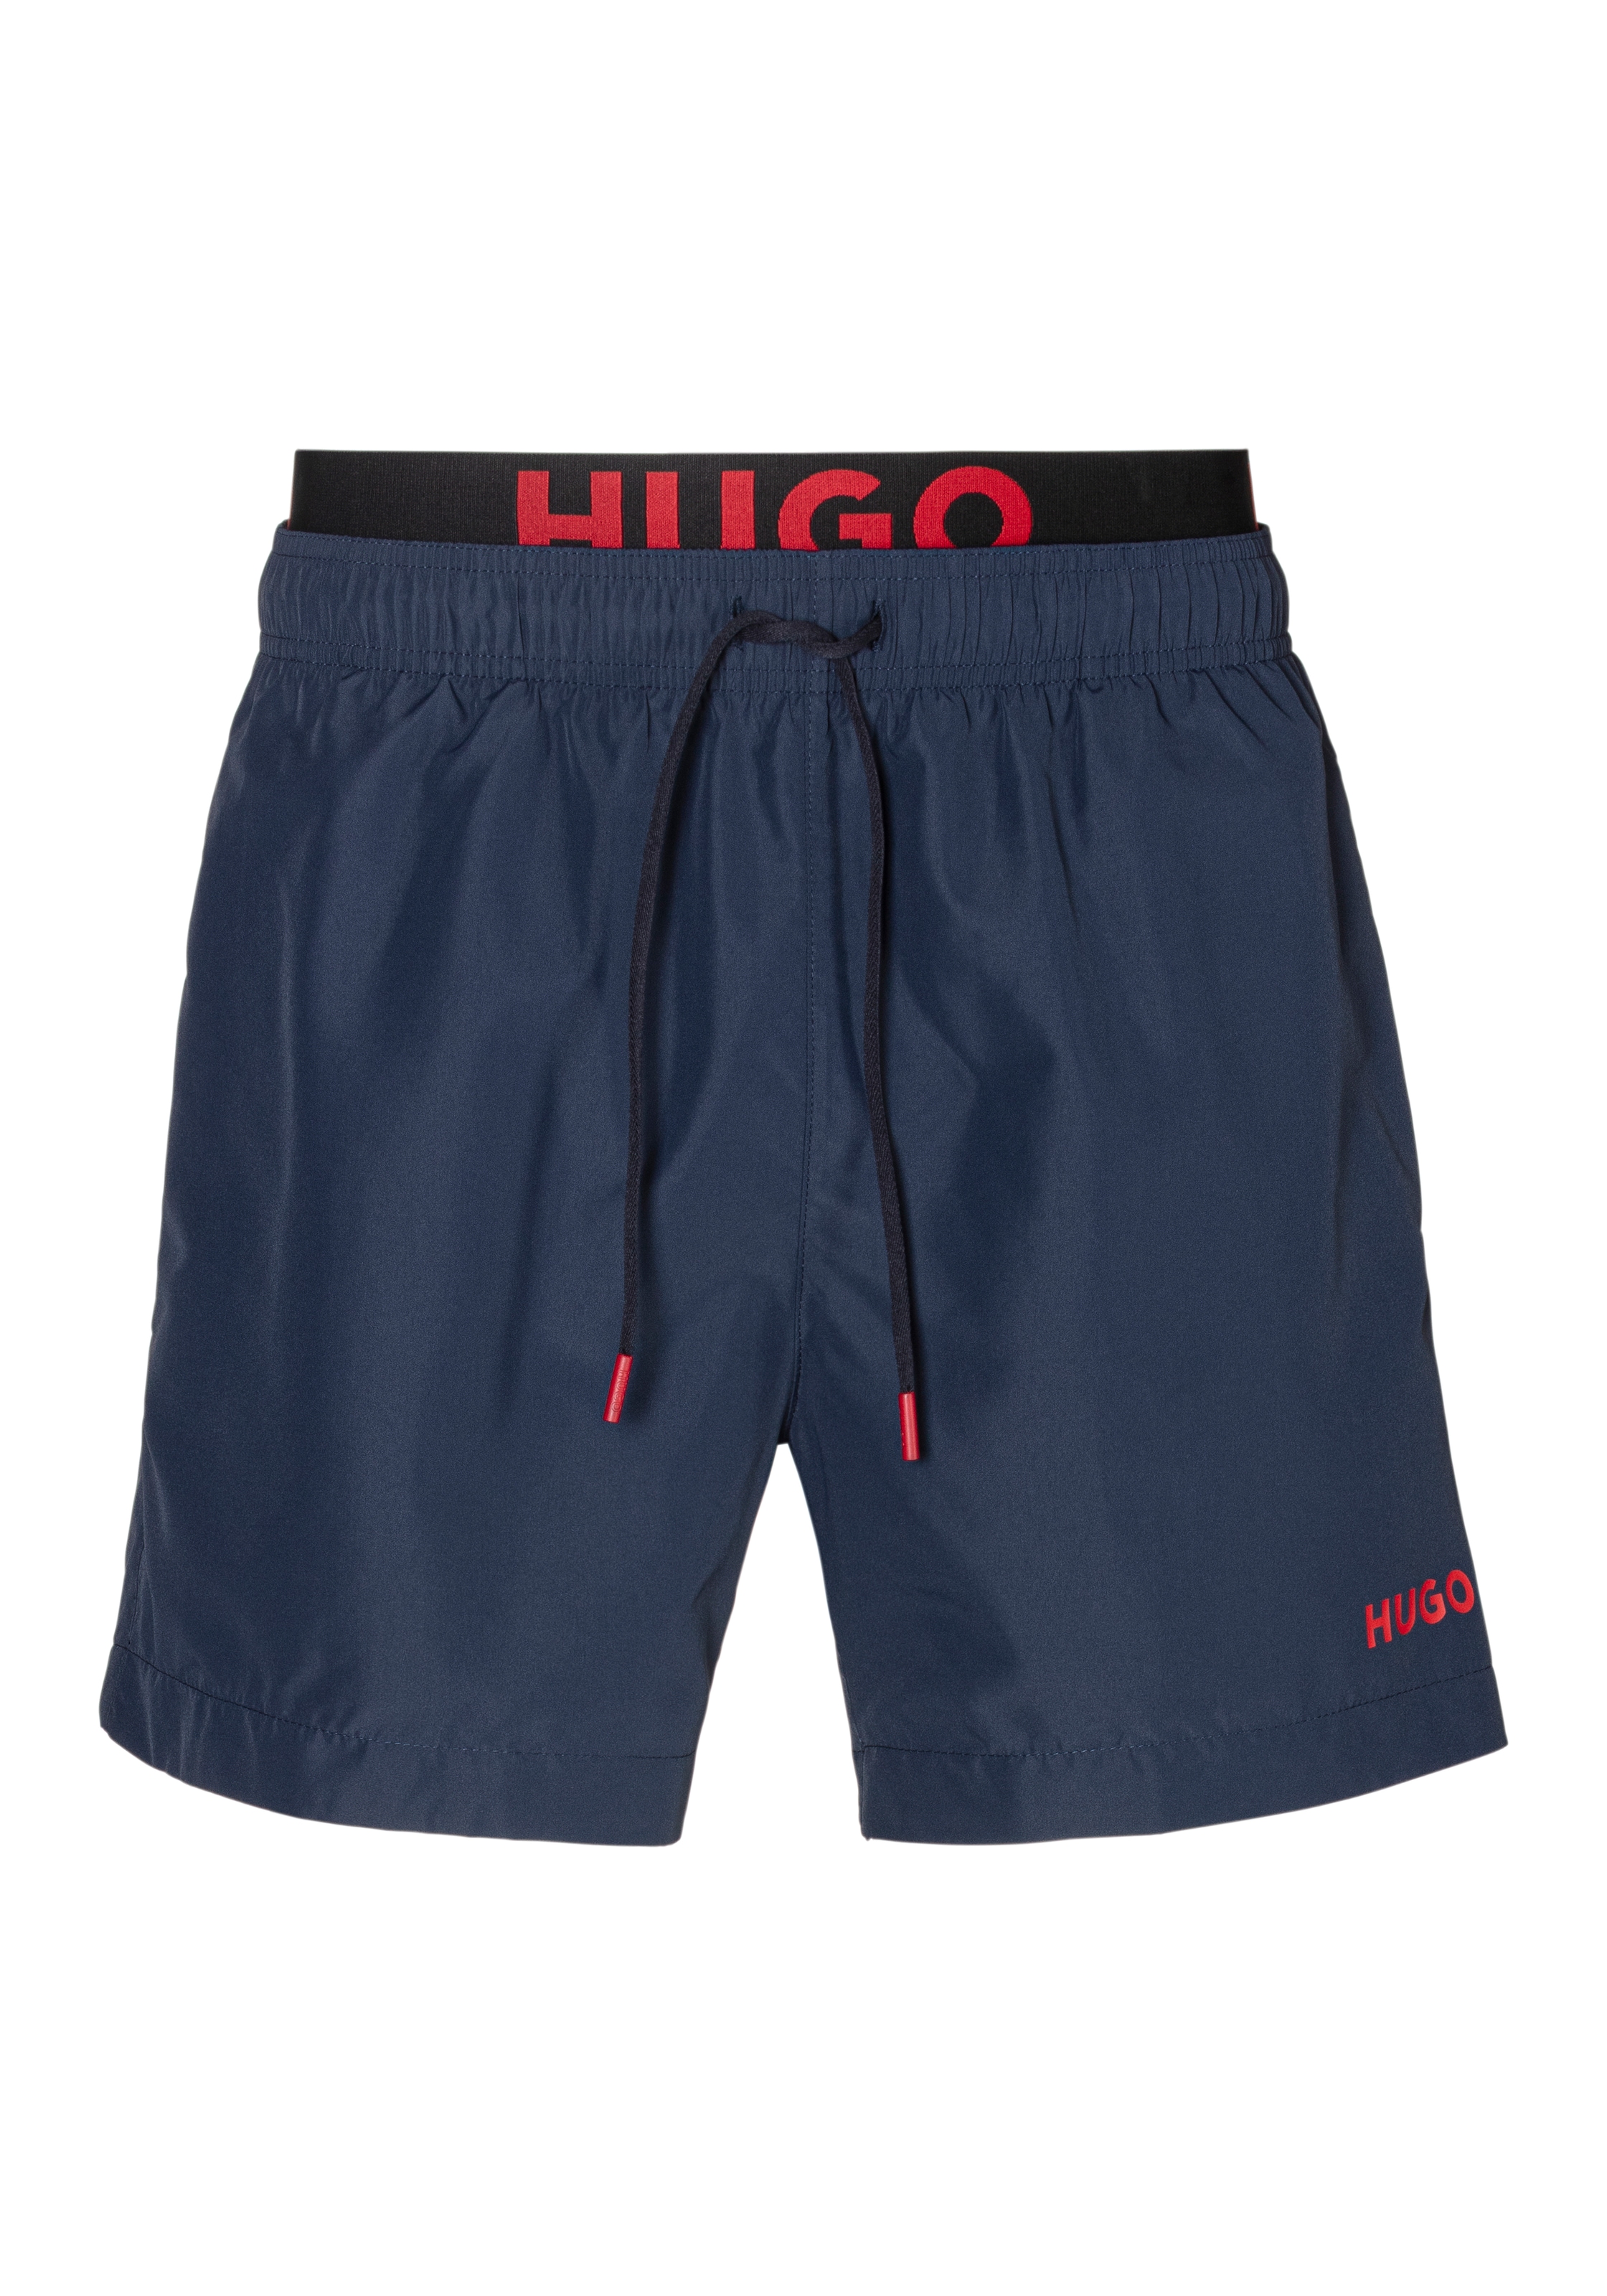 HUGO Underwear Badeshorts »FLEX«, mit BOSS Logodruck